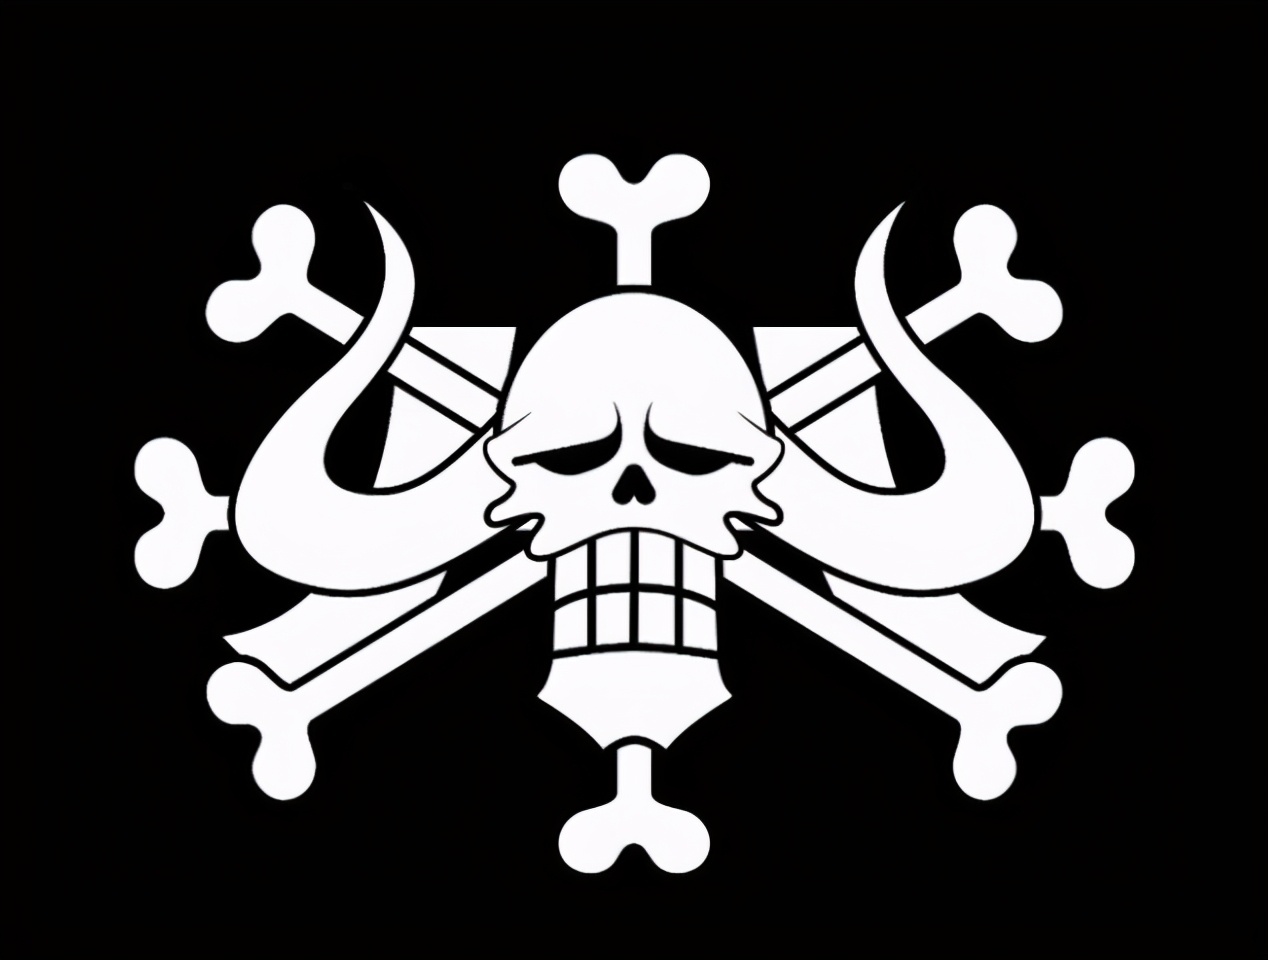 百兽海贼团的旗帜主要是凯多本人的象征.